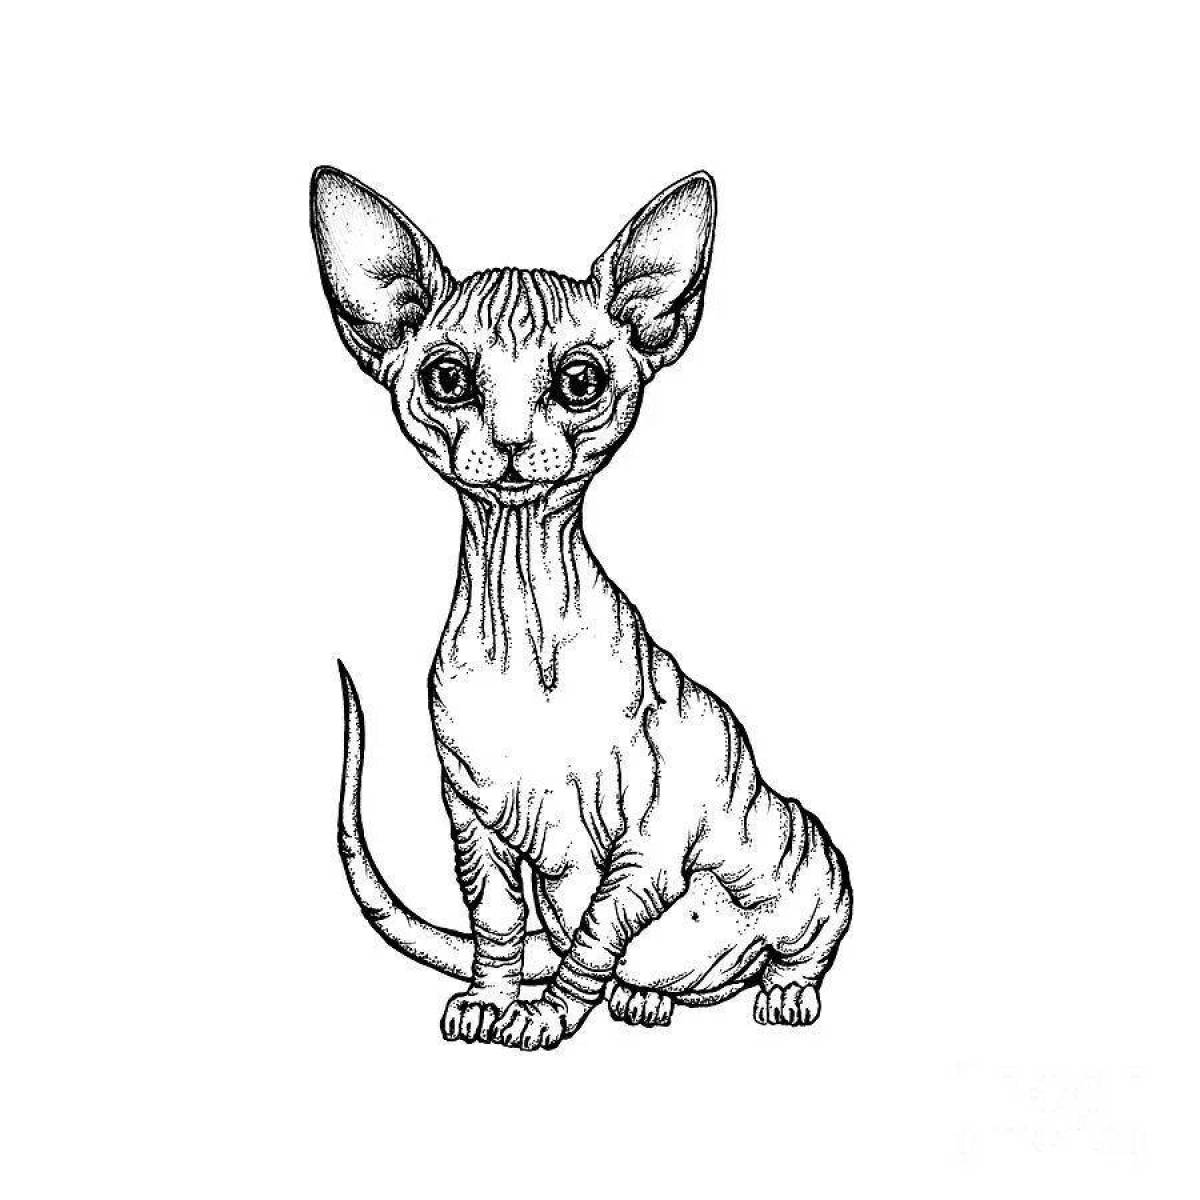 Раскраска экзотическая кошка-сфинкс